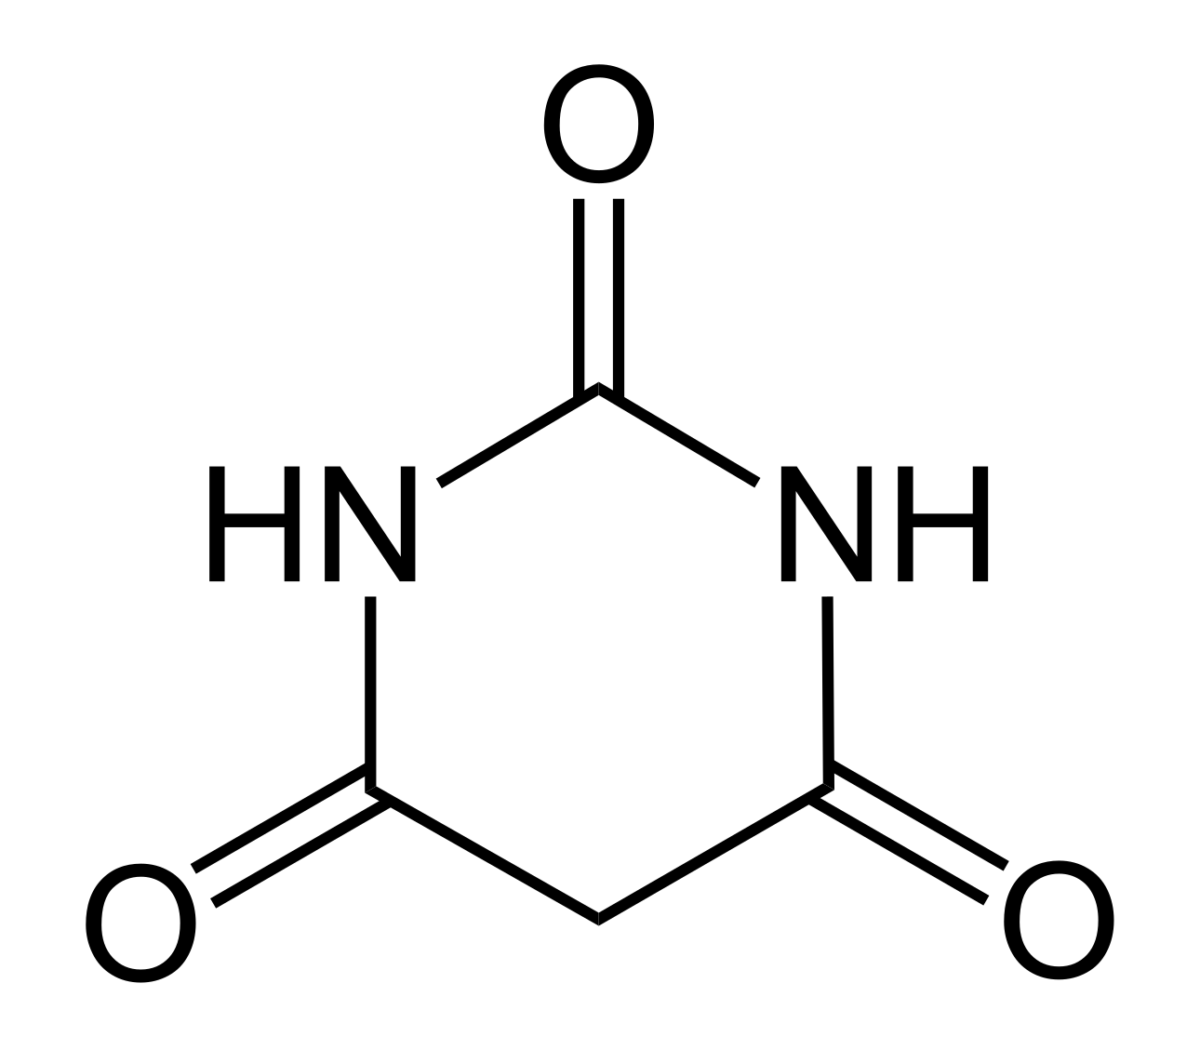 Barbituric acid